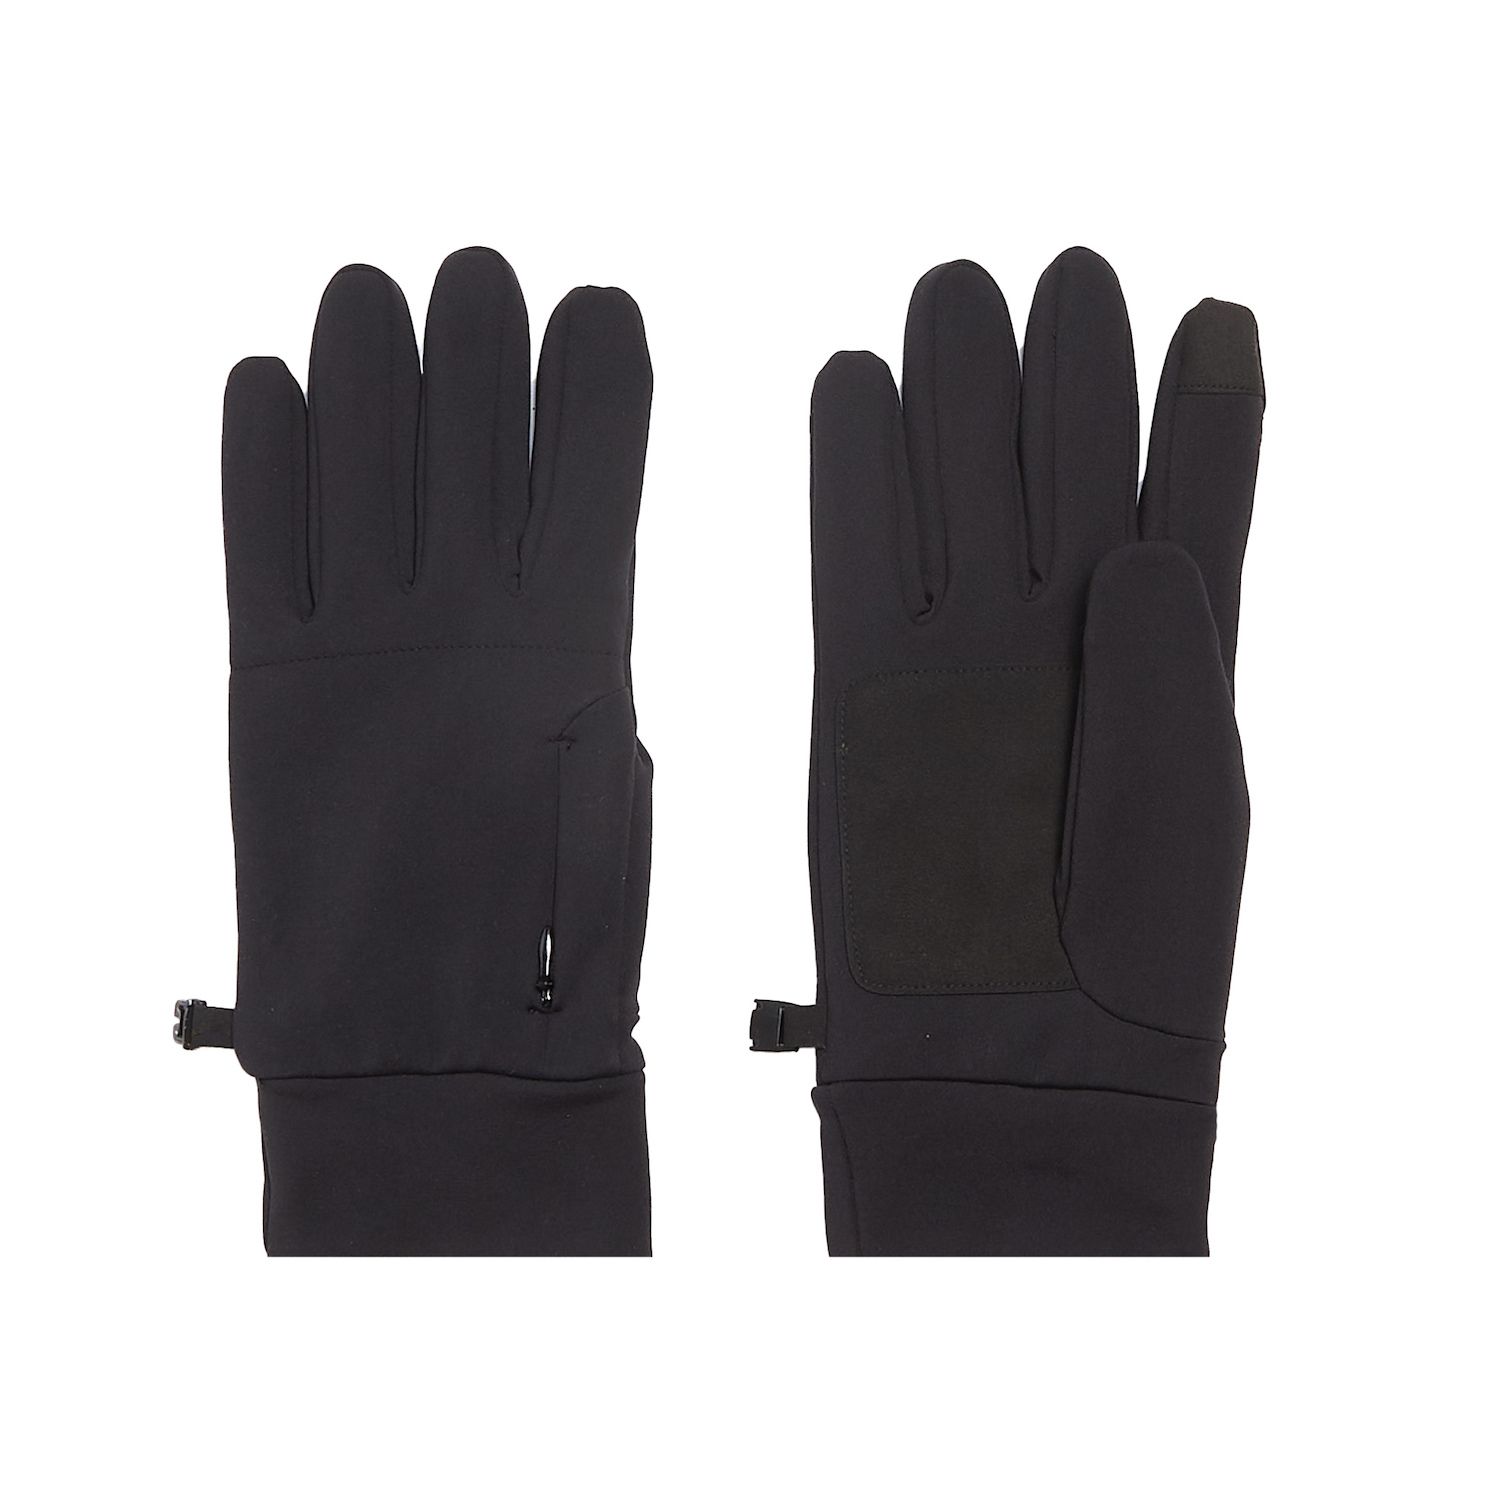 Image for HeatKeep Men's Black Touchscreen Gloves at Kohl's.